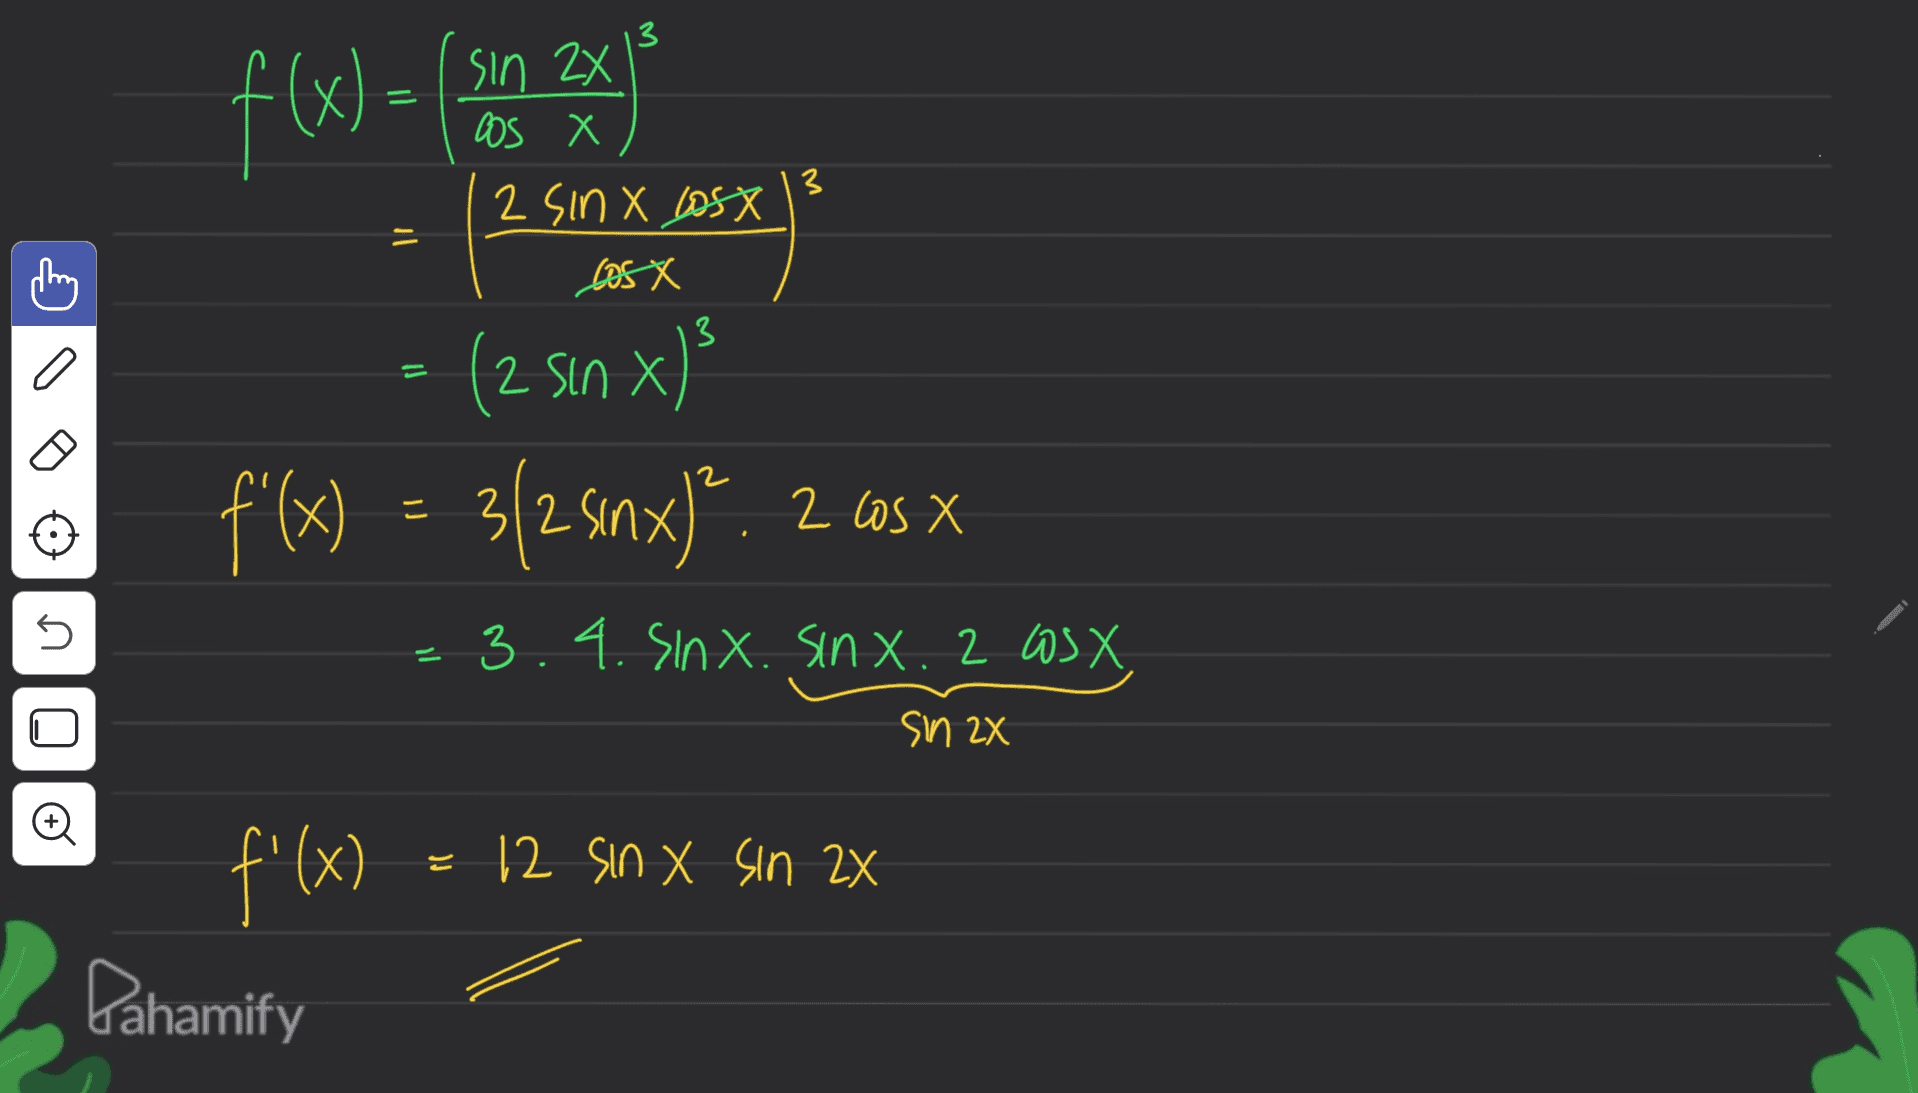 3 sin 2X f(x) = x Soo 2 SINX Losx 11 Xseg 3 = (2 sin x) X x 597 zilxuszle = (x),f ( n 3.4. SinX. sinx. 2 OS X sin 2X (x) = 12 sin X sin 2X f'(x) Dahamify 